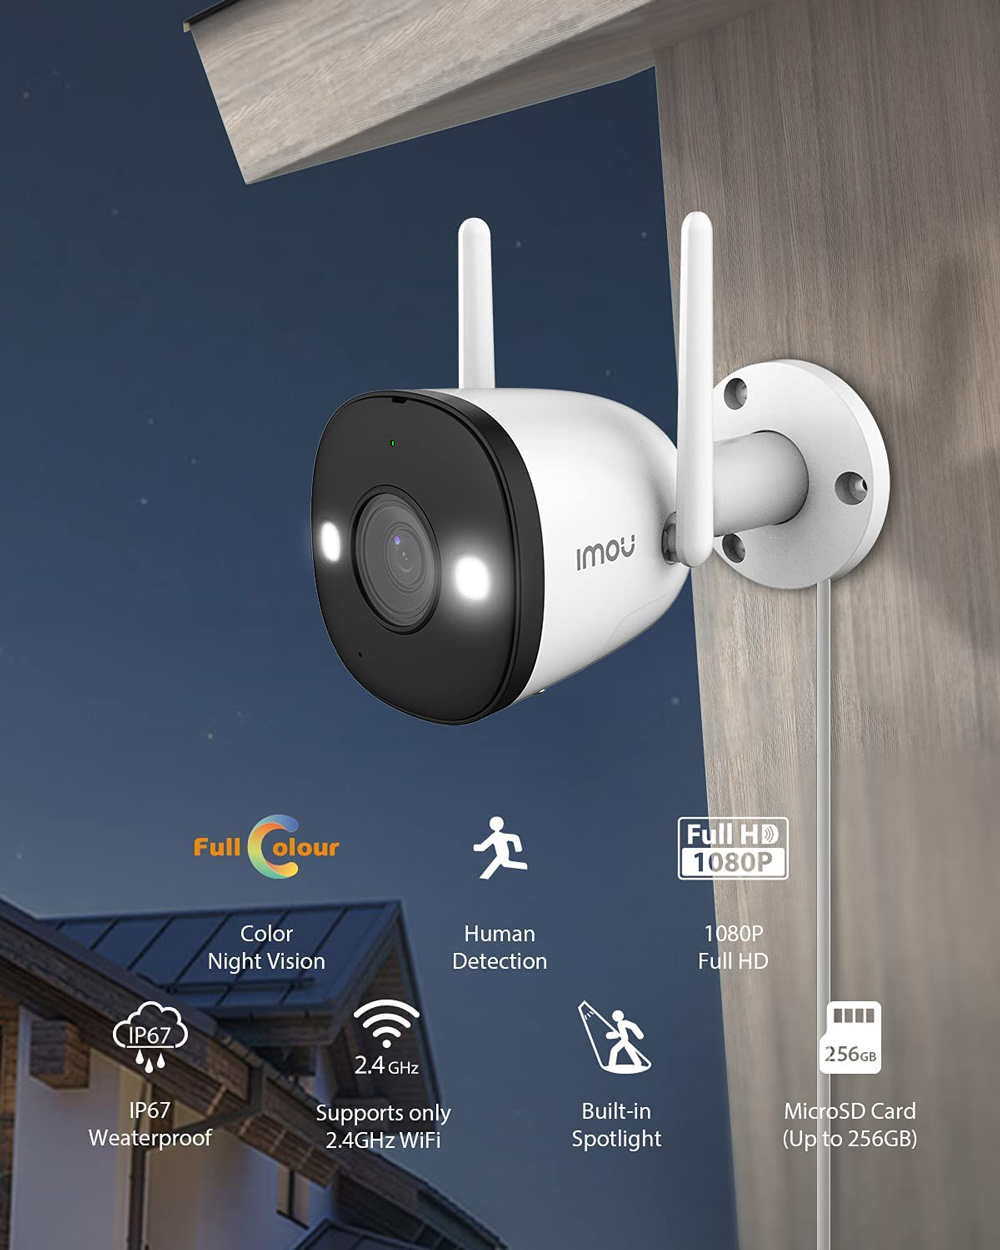 Dahua IMOU Bullet 2E WiFi kültéri biztonsági kamera, 1080P FHD, színes éjszakai látás, könnyű aktív védelem, IP67 időjárásálló otthoni vállalati biztonsági monitor - fehér